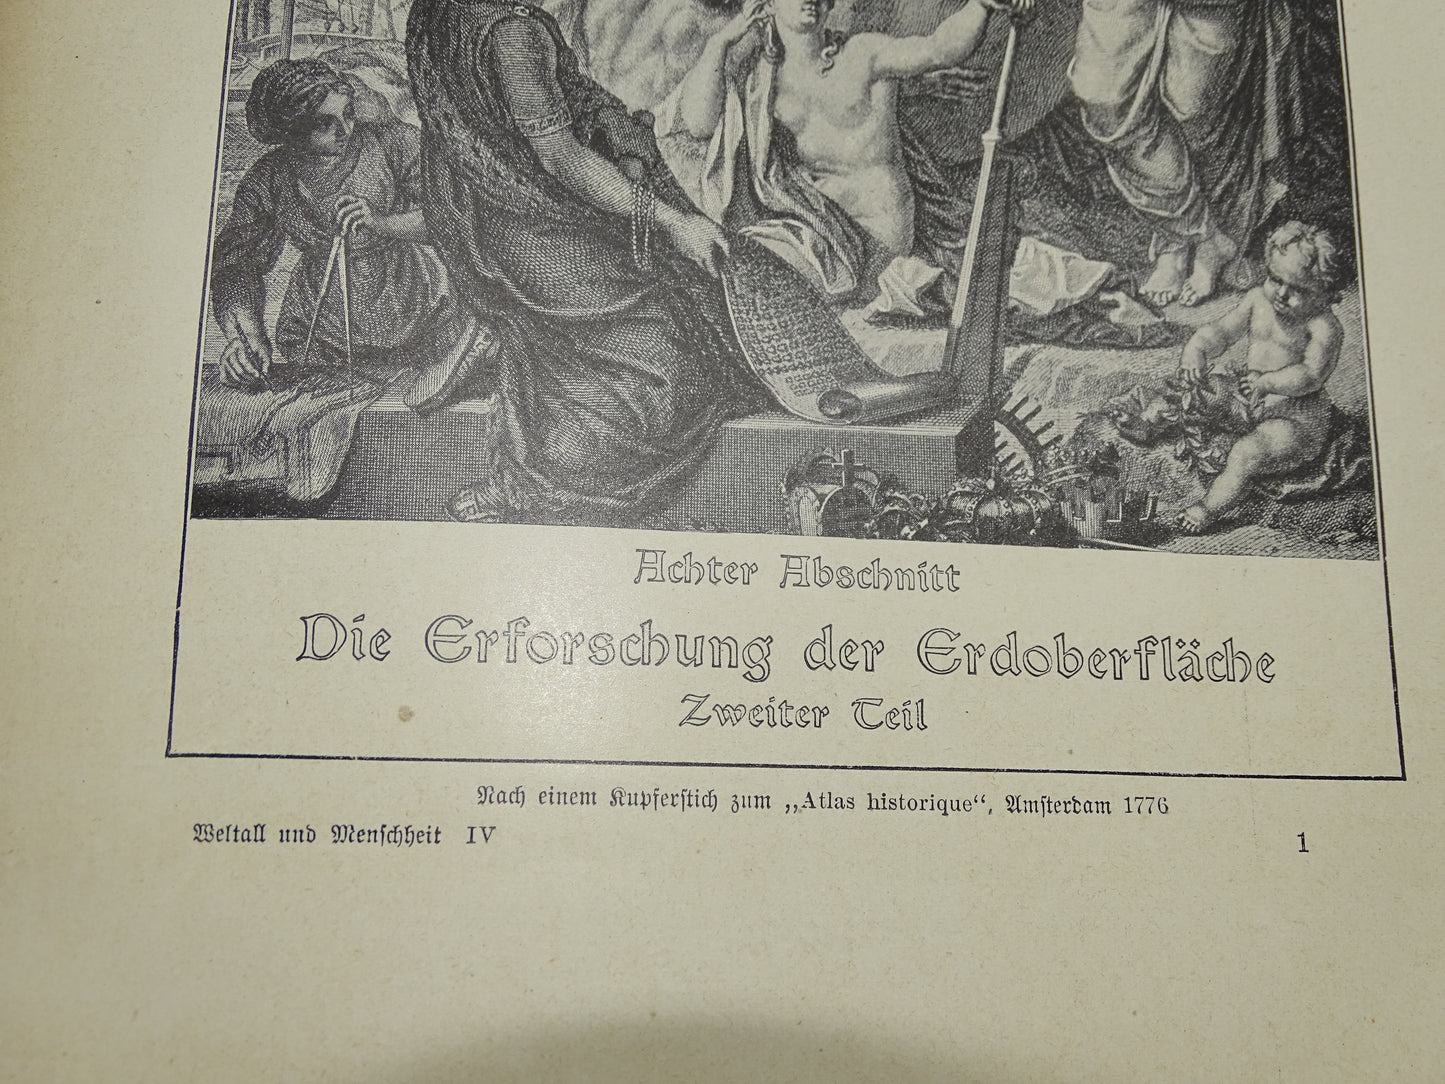 Antiek Boek: Welltall Und Menschheit, 1910